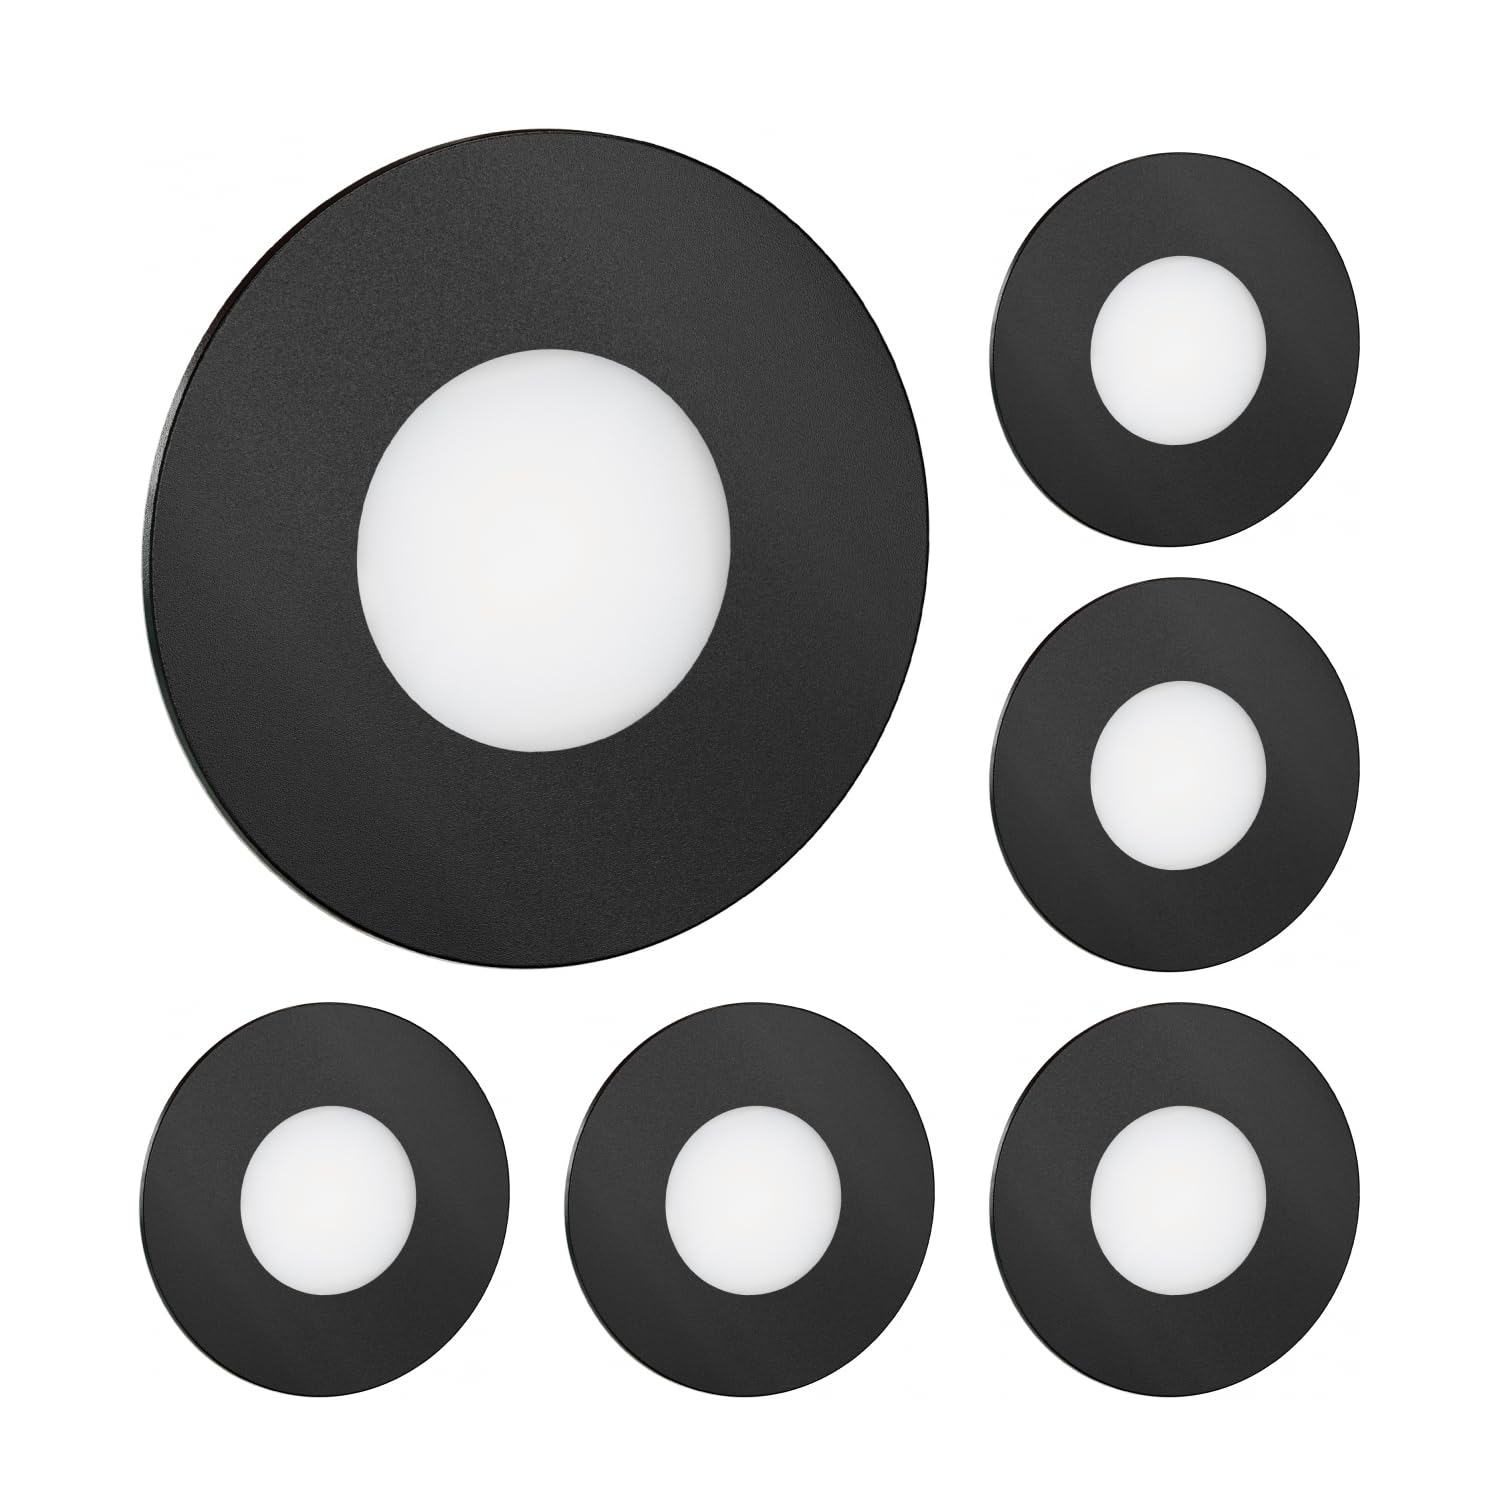 ledscom.de 6 Stück LED Treppenlicht/Wandeinbauleuchte FEX für innen und außen, rund, schwarz, 85mm Ø, kaltweiß